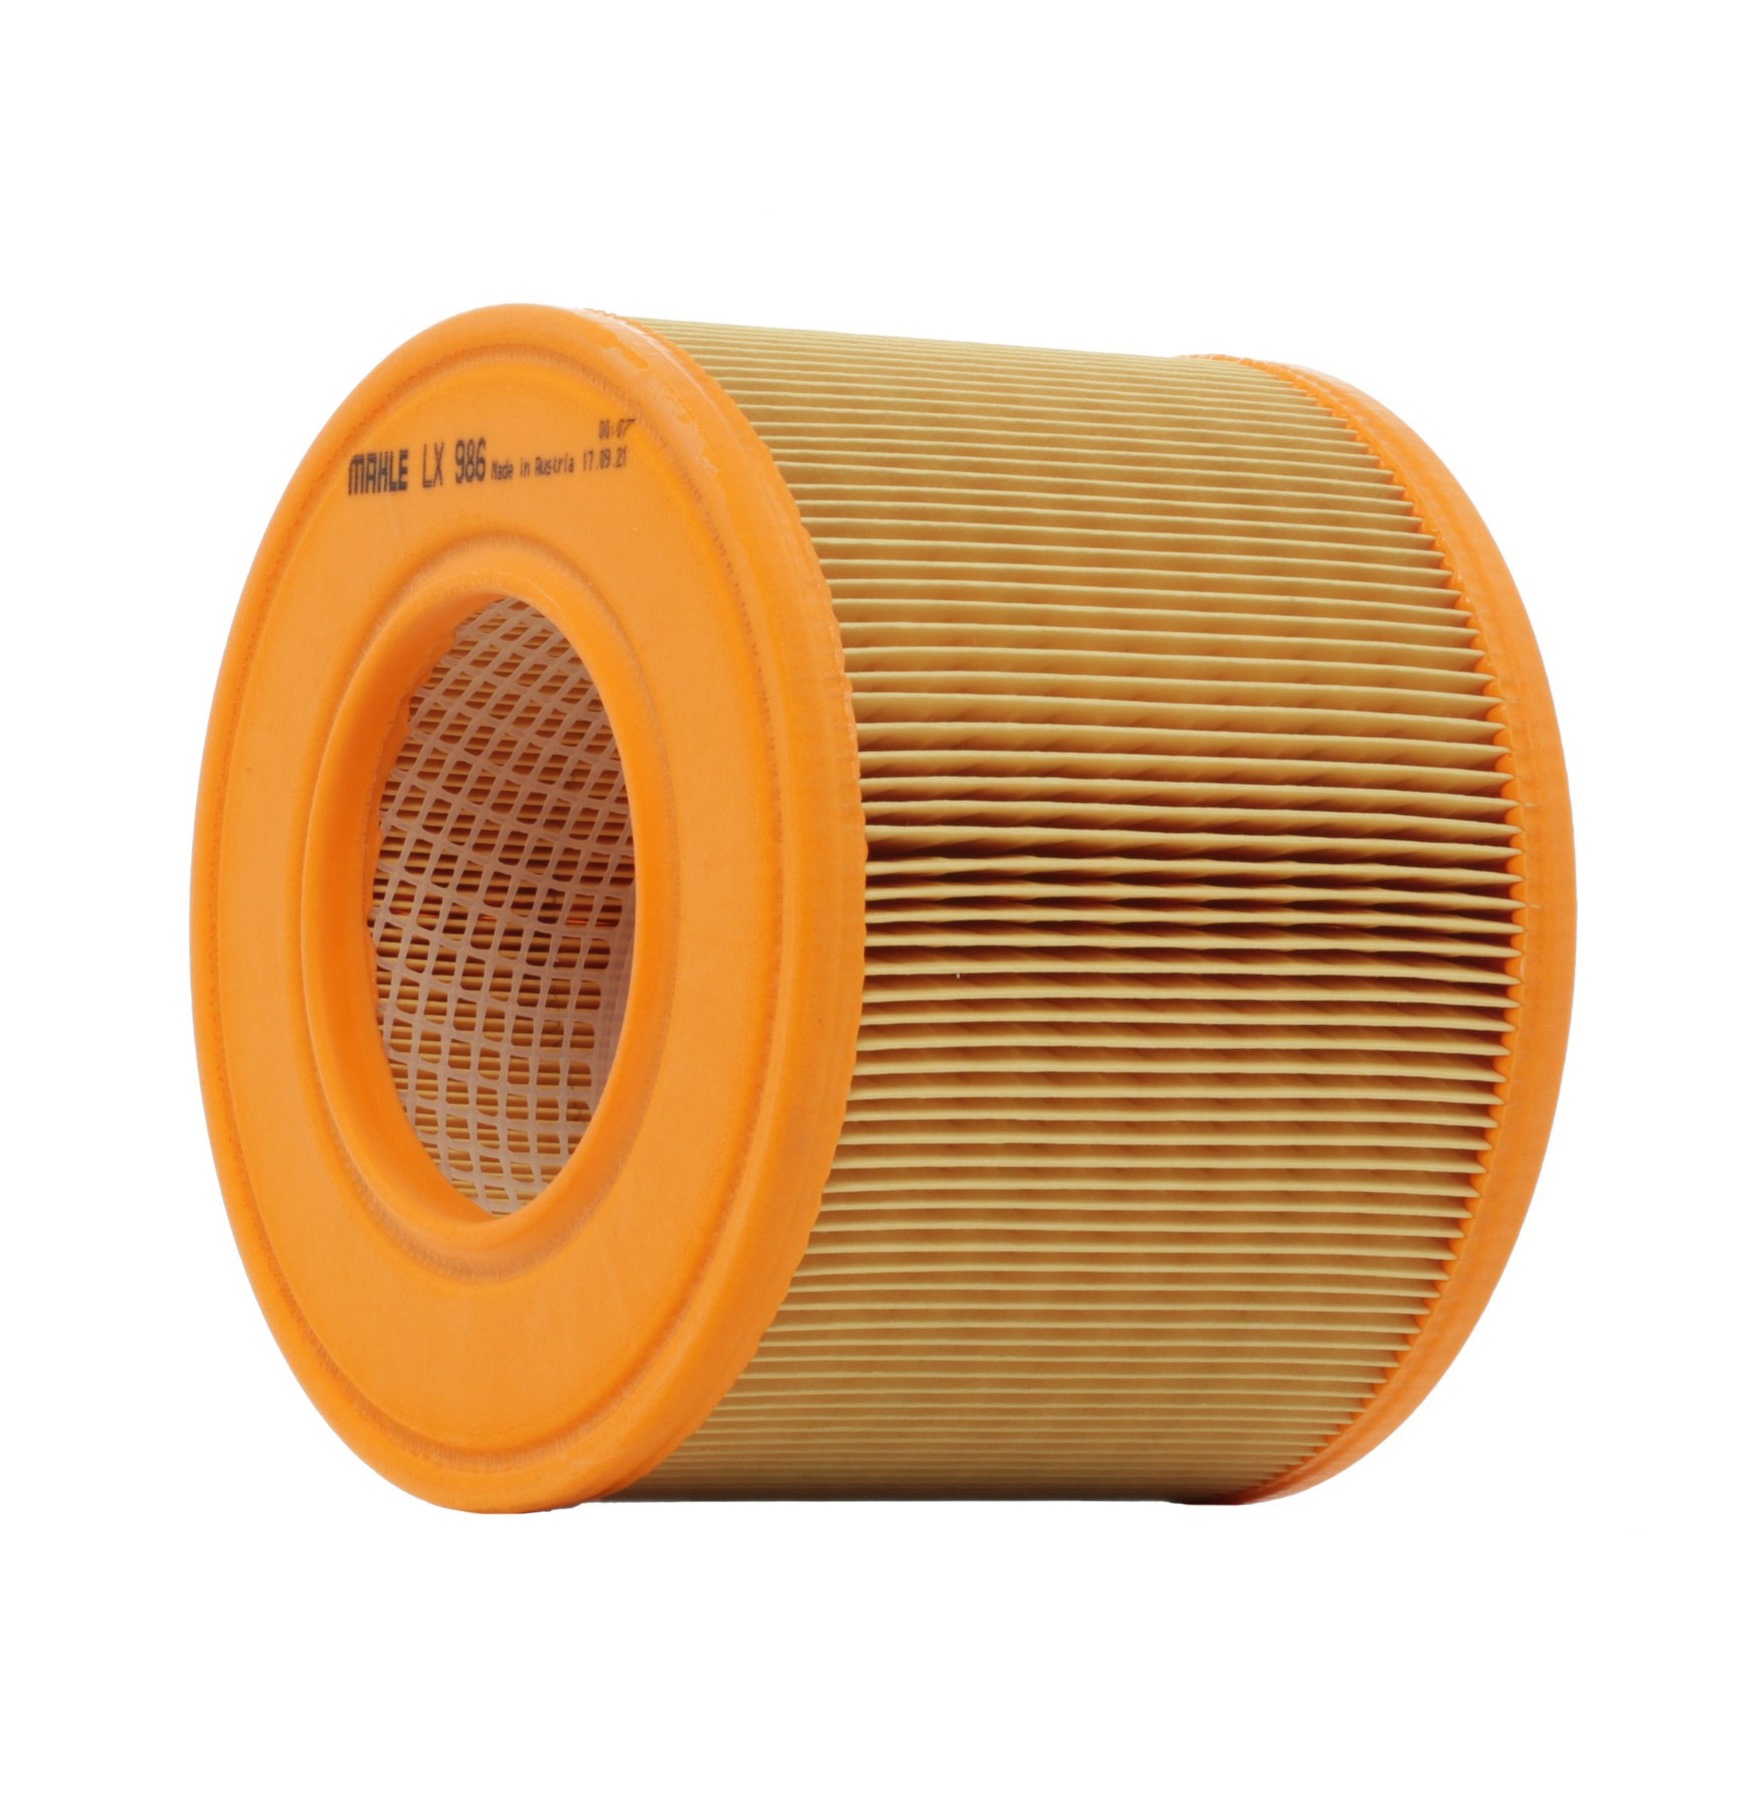 MAHLE ORIGINAL LX 986 Air filter 140,5mm, 180,5mm, Filter Insert